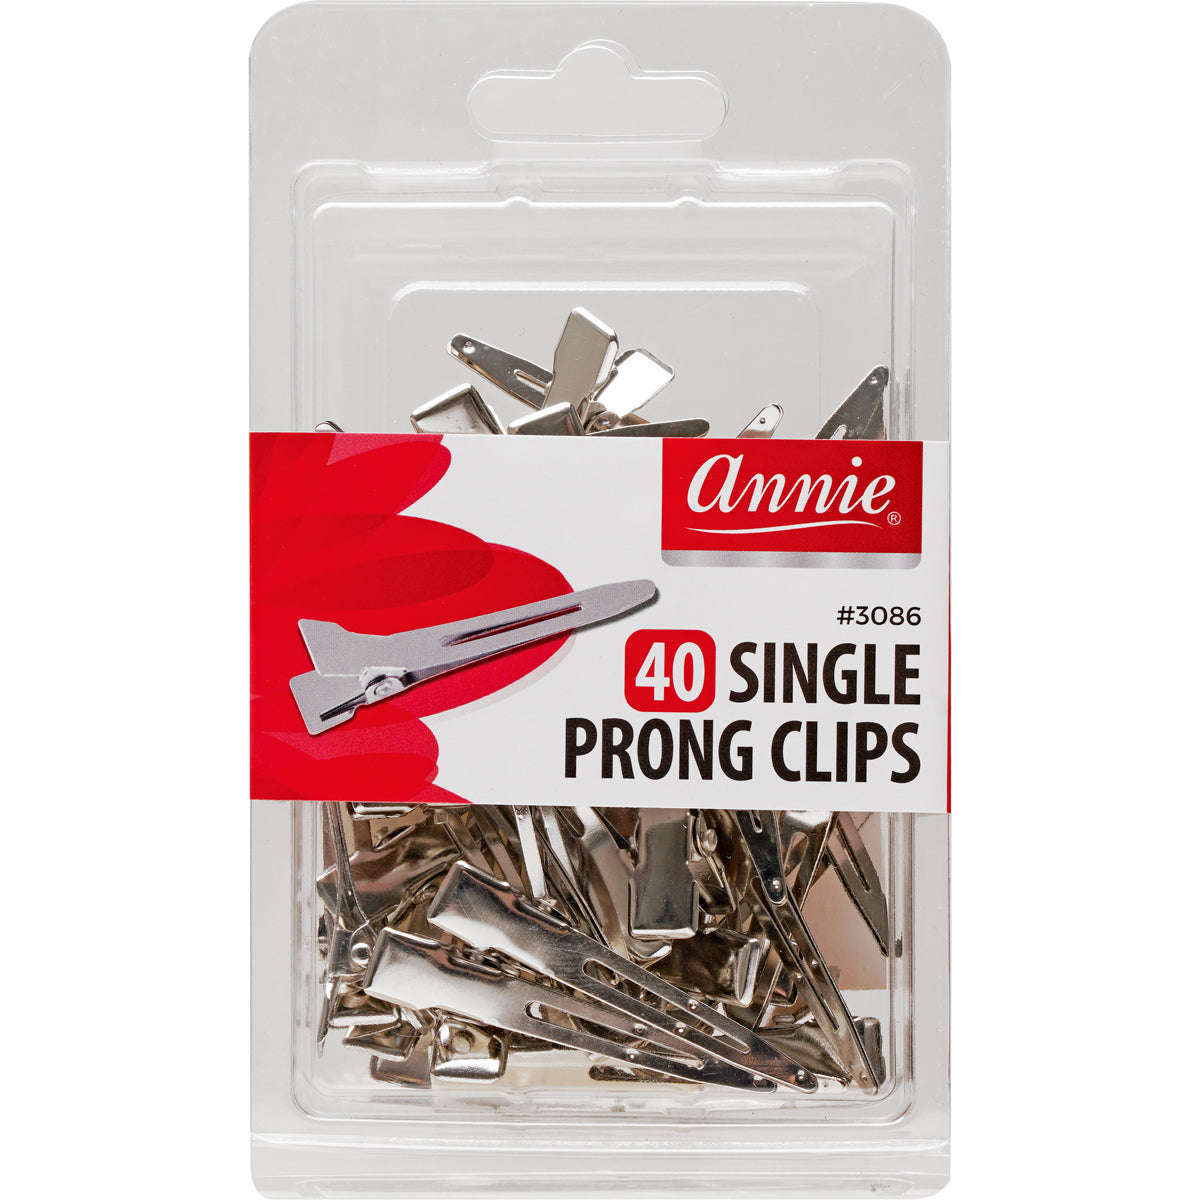 Annie Premium Quality T-Pins 12 CT #3140